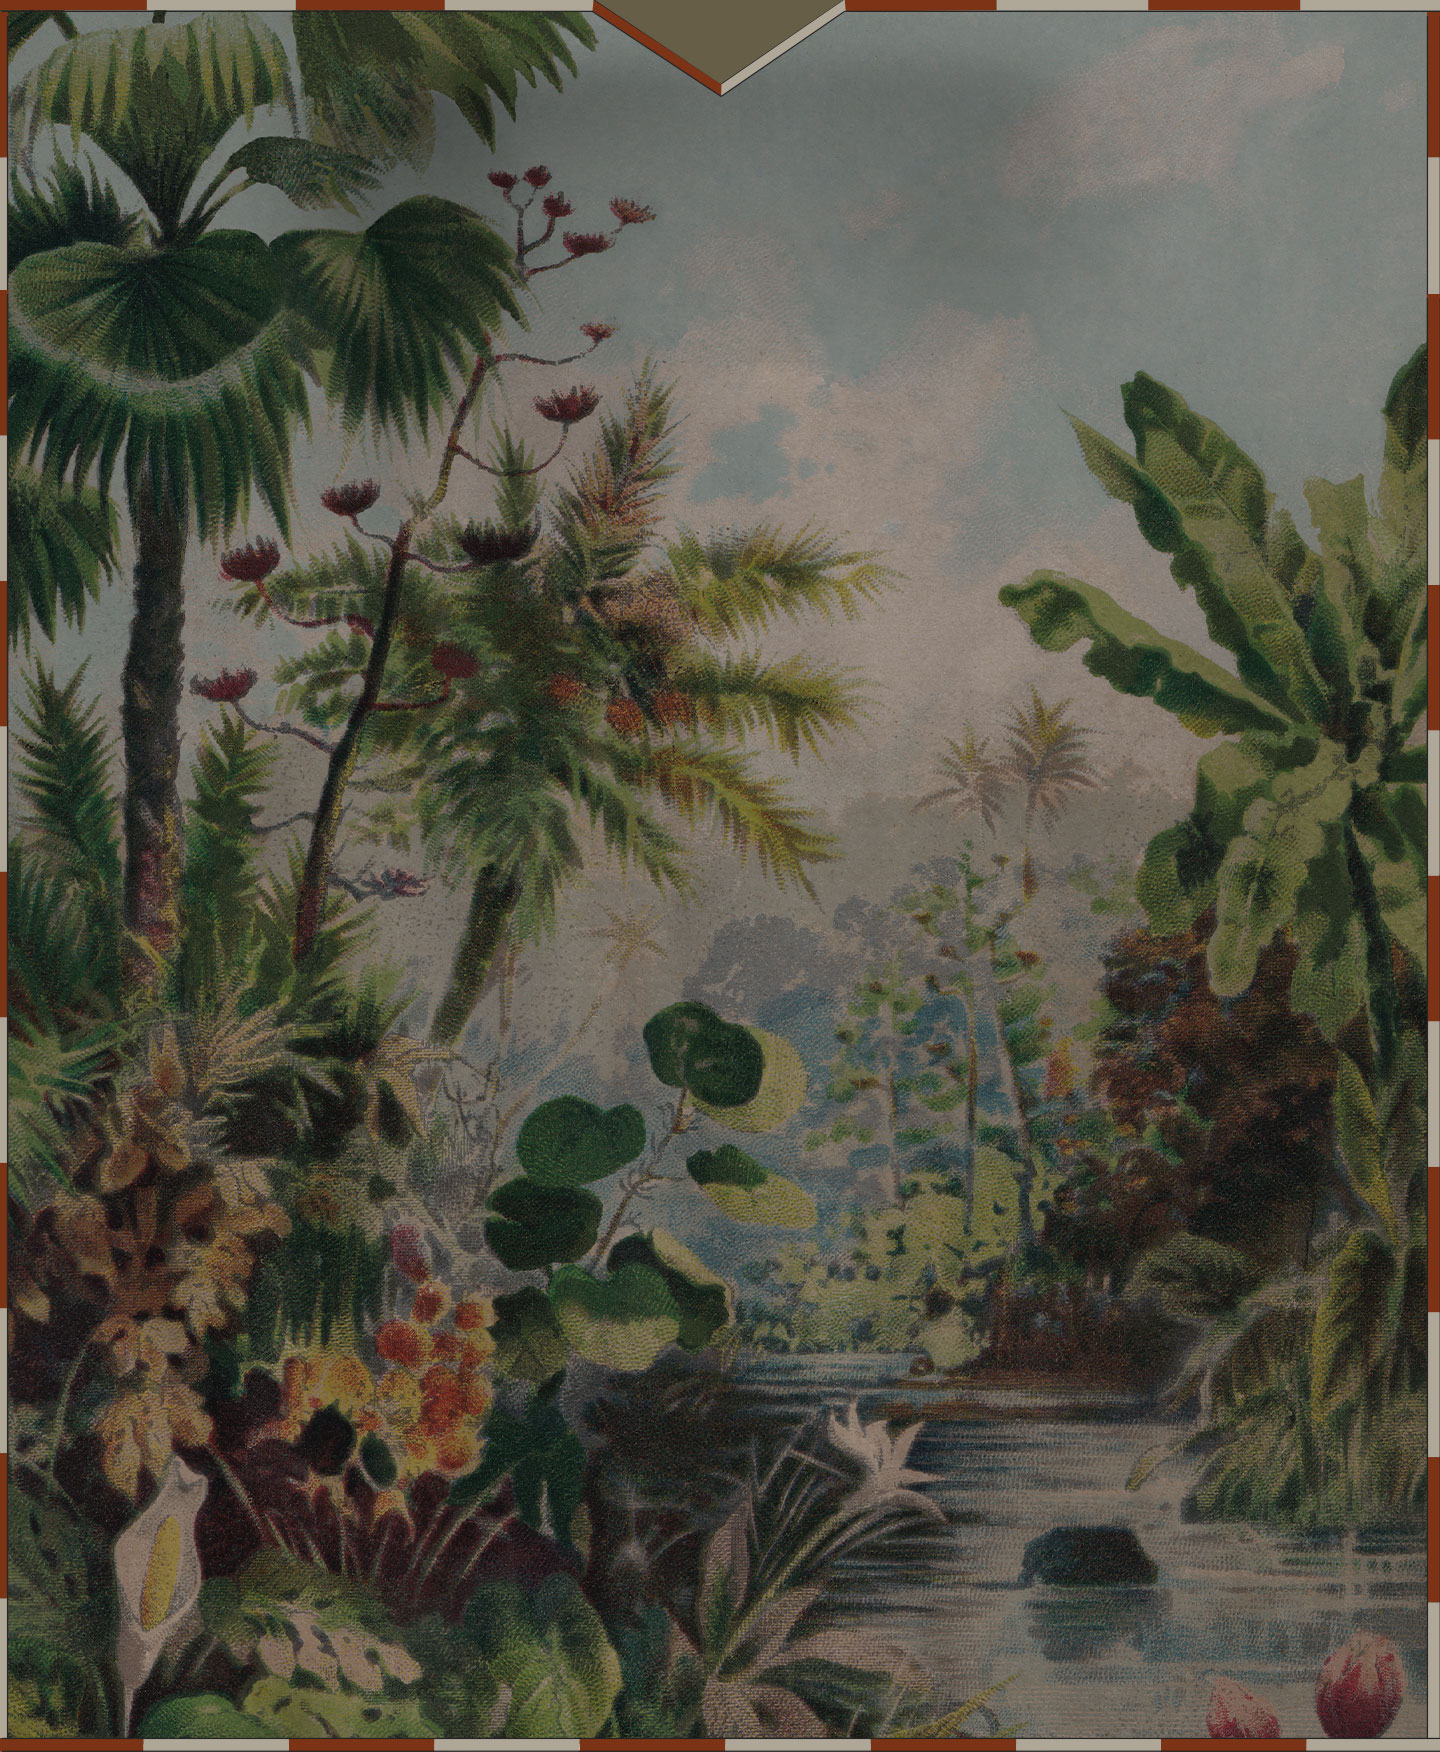 lush jungle with wildlife illustration background